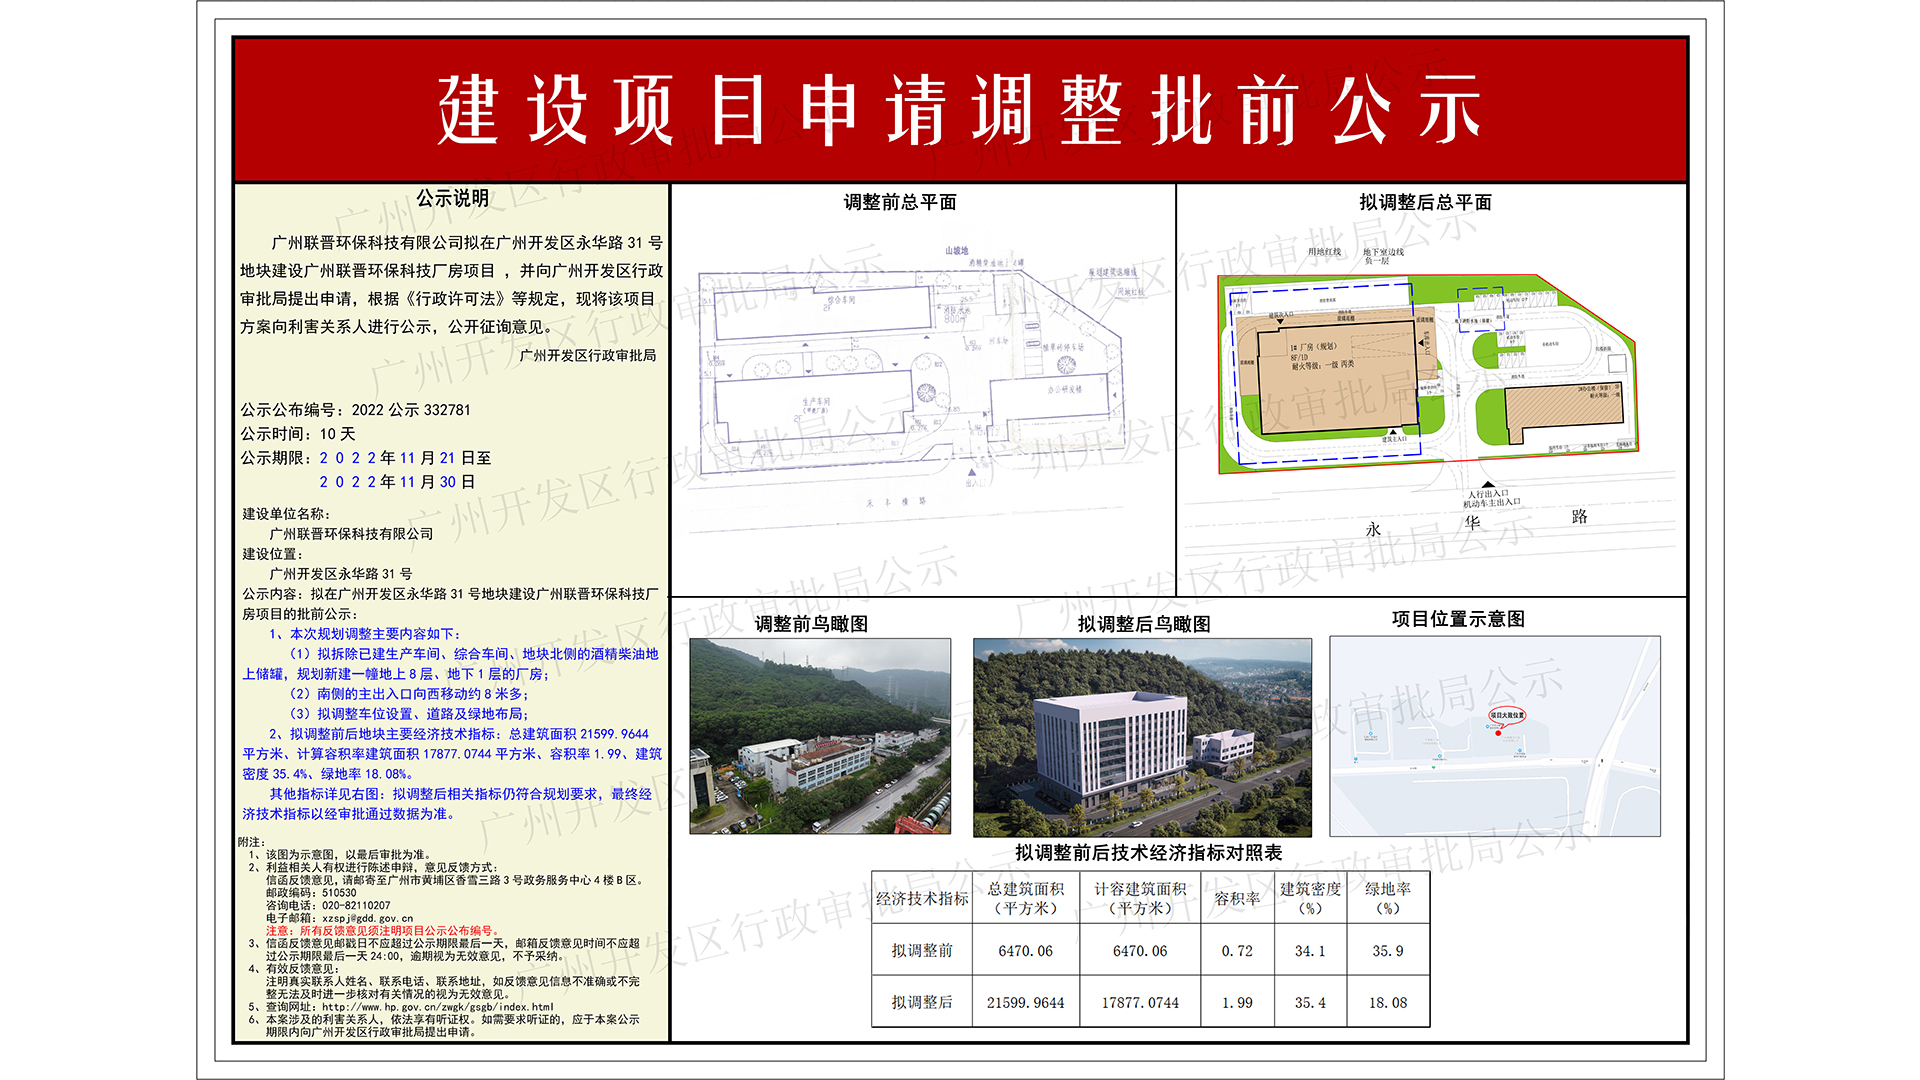 （一楼：1920x1080）-2022公示332781-广州联晋环保科技有限公司-方案批前.jpg